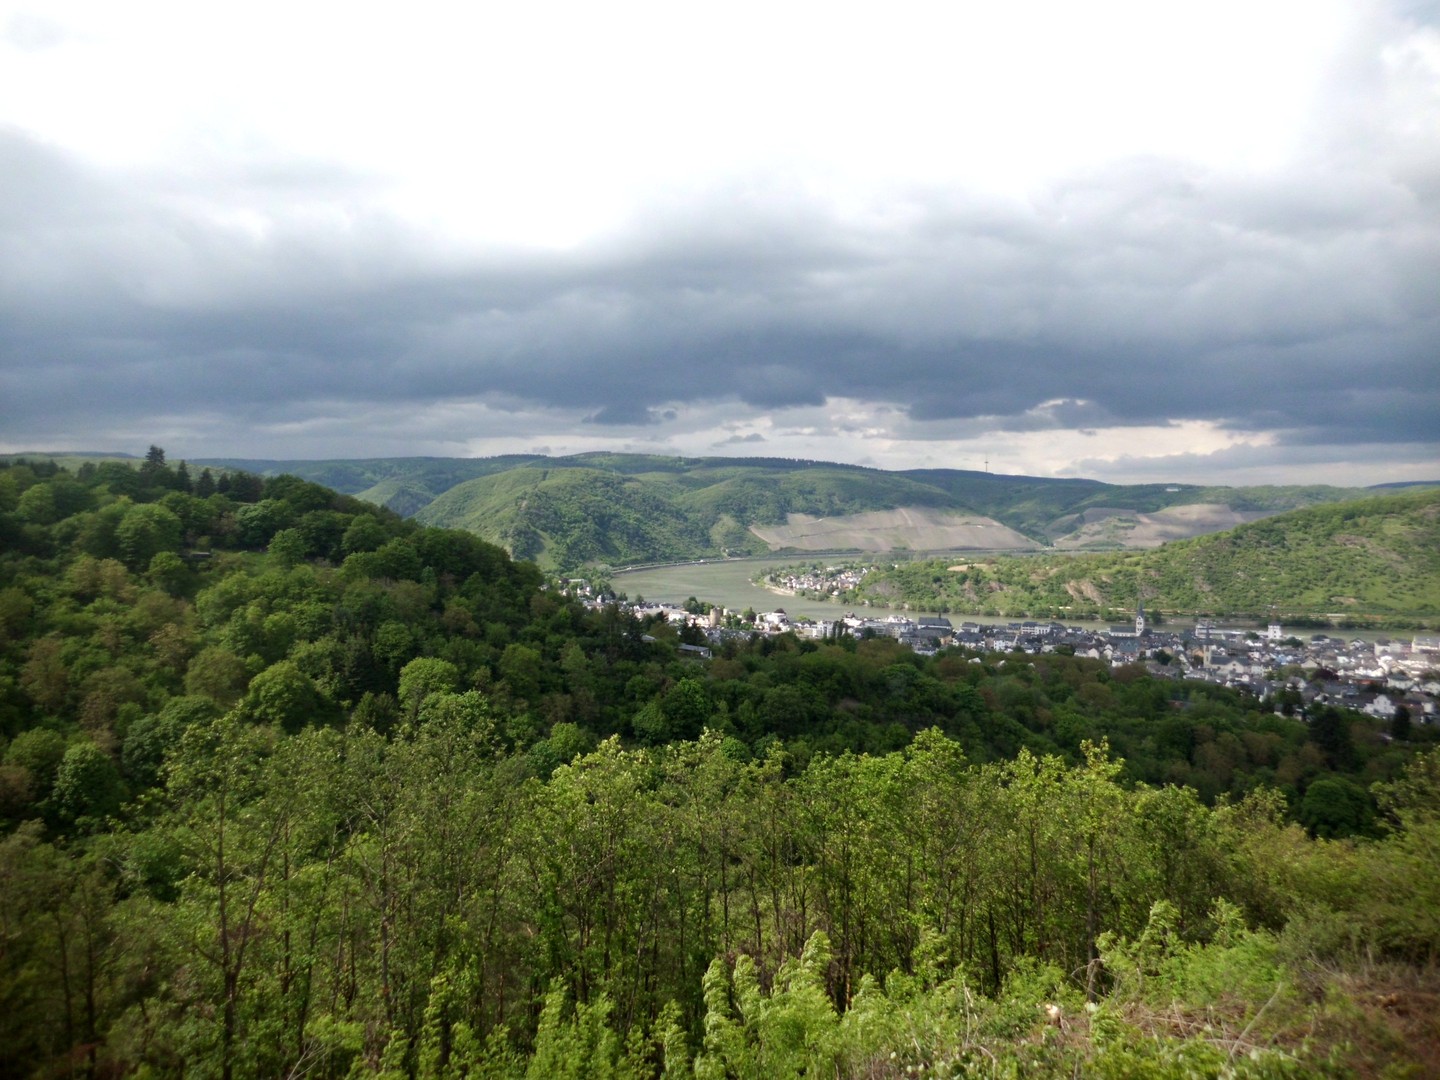 herrliches Panorama: Boppard mit Gedeonseck und Rheinschleife vom Aussichtspunkt in der fünften Kehre aus gesehen.